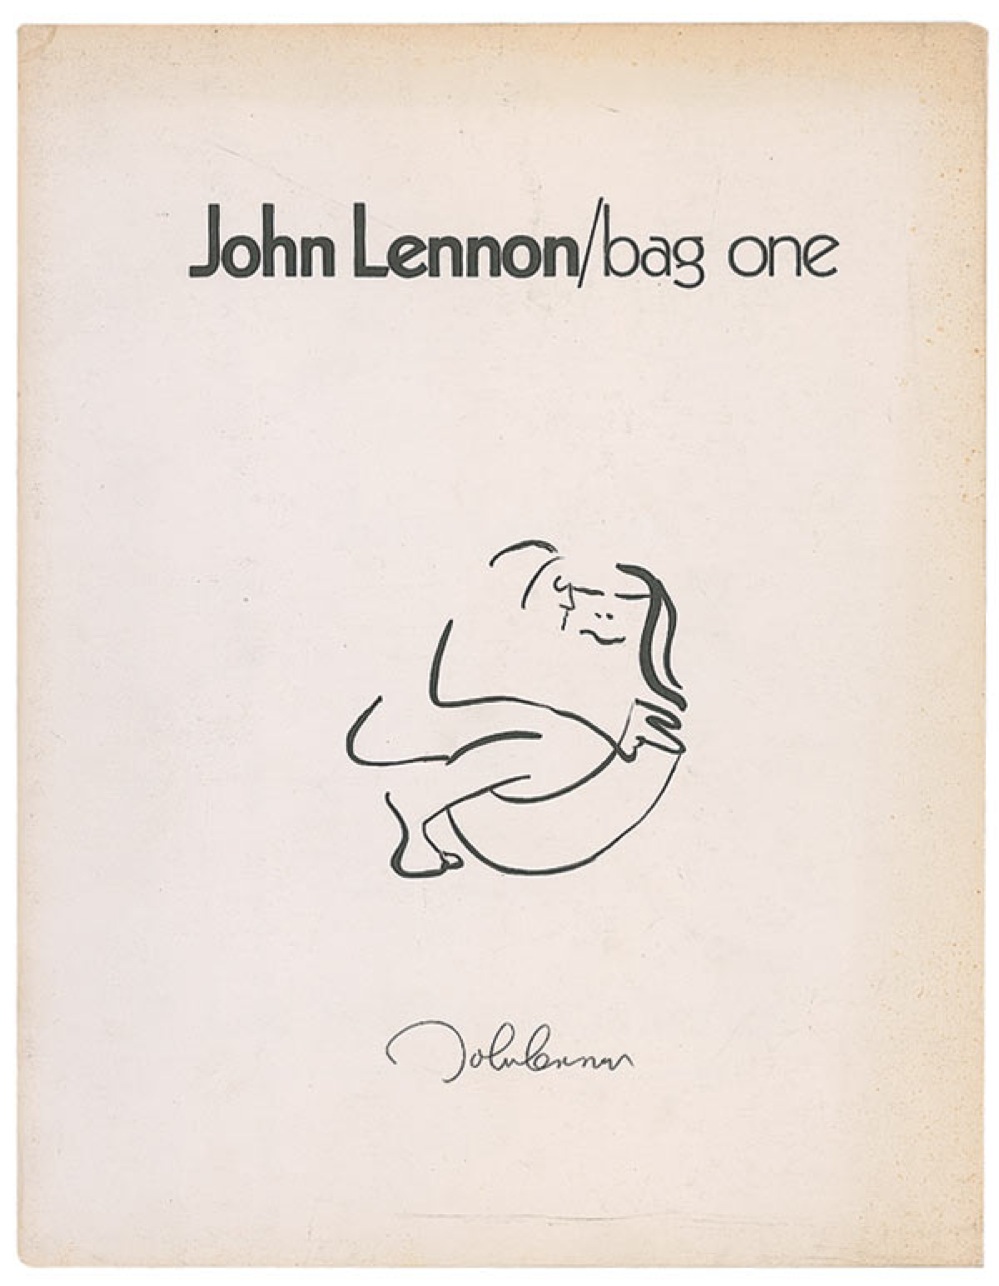 Lot #77 John Lennon